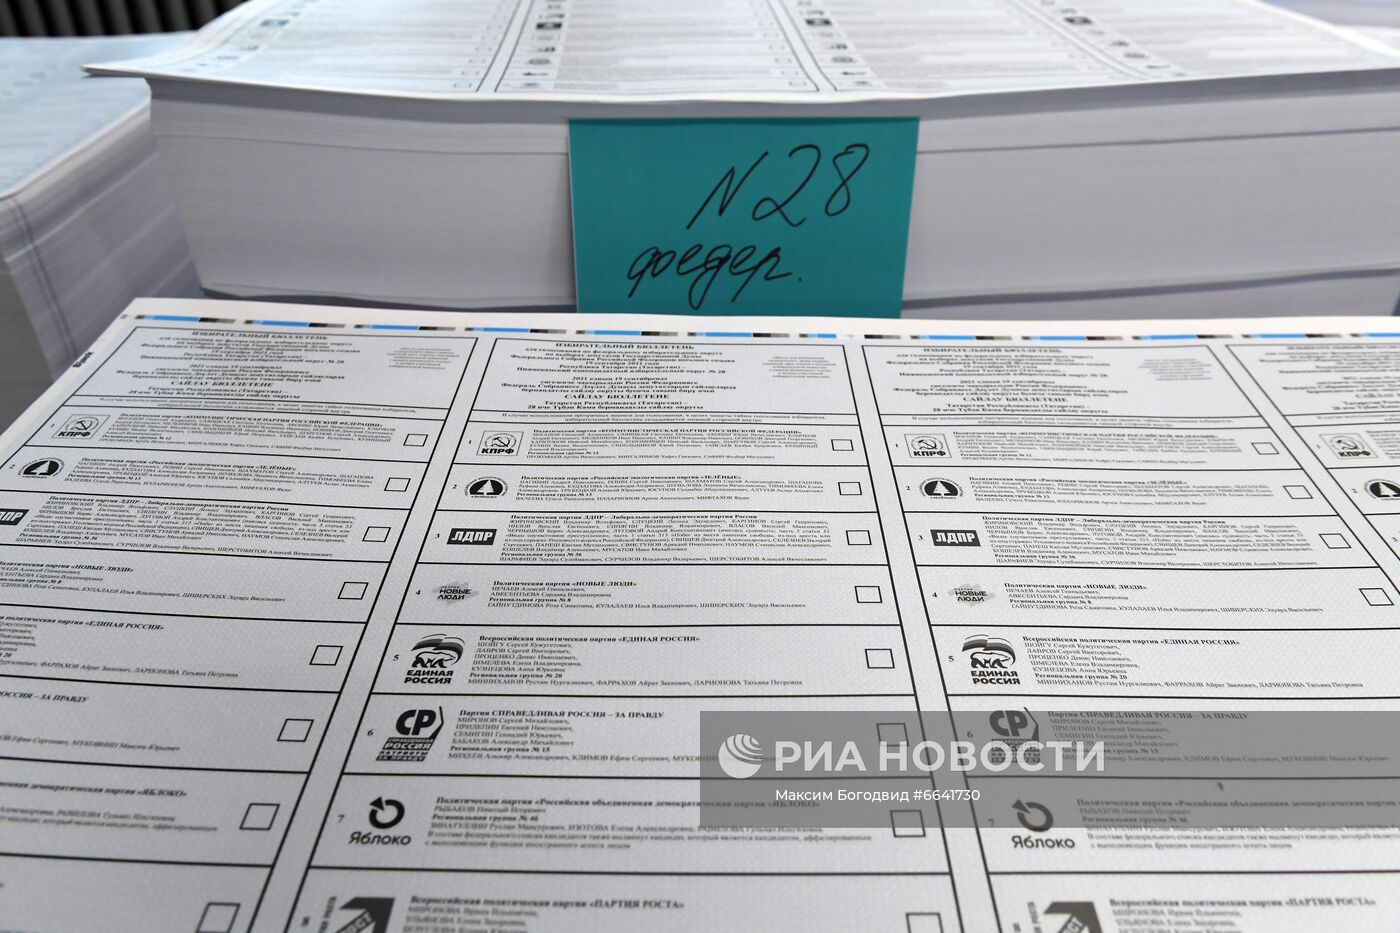 Изготовление бюллетеней для голосования на выборах депутатов Госдумы РФ